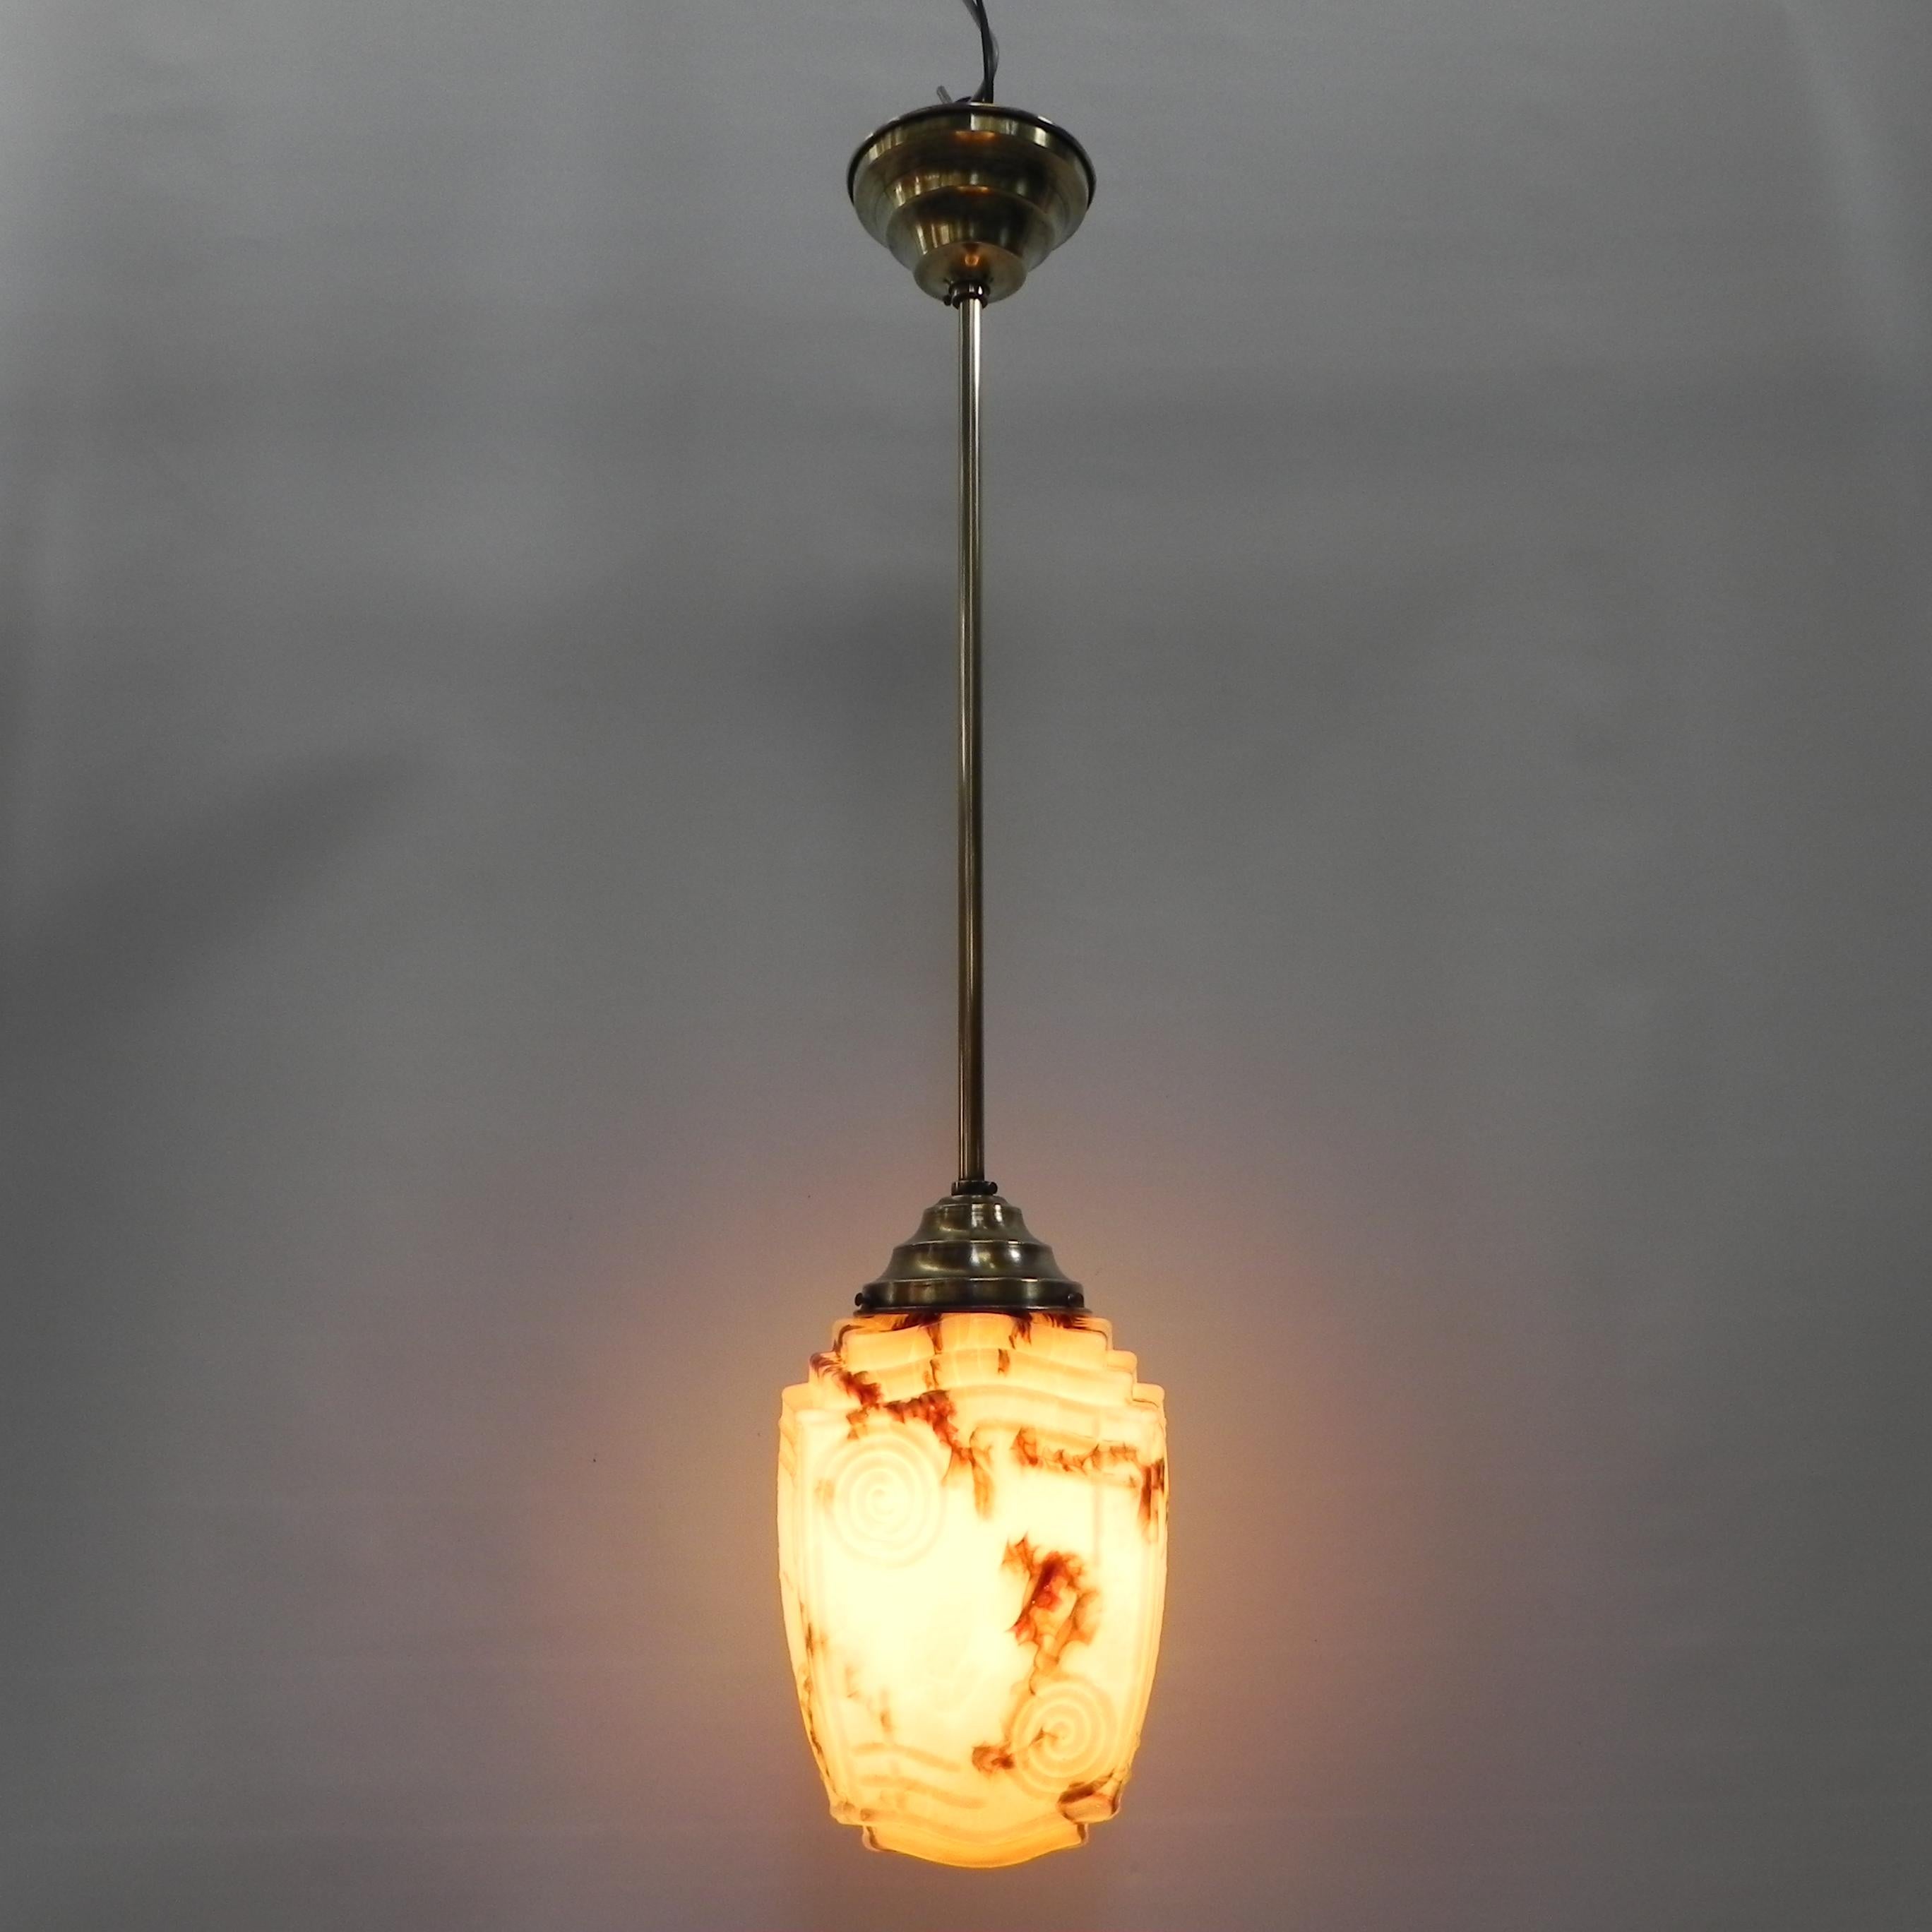 Gesamthöhe: 85 cm.
Ø: 20 cm.
Höhe Kapuze: 24 cm.
Diese Leuchte ist mit einem
große Glühbirnenfassung (E27) und neues Gewinde.
Herkunft: Belgien, 1930er Jahre.
MATERIAL: Messing/Glas.